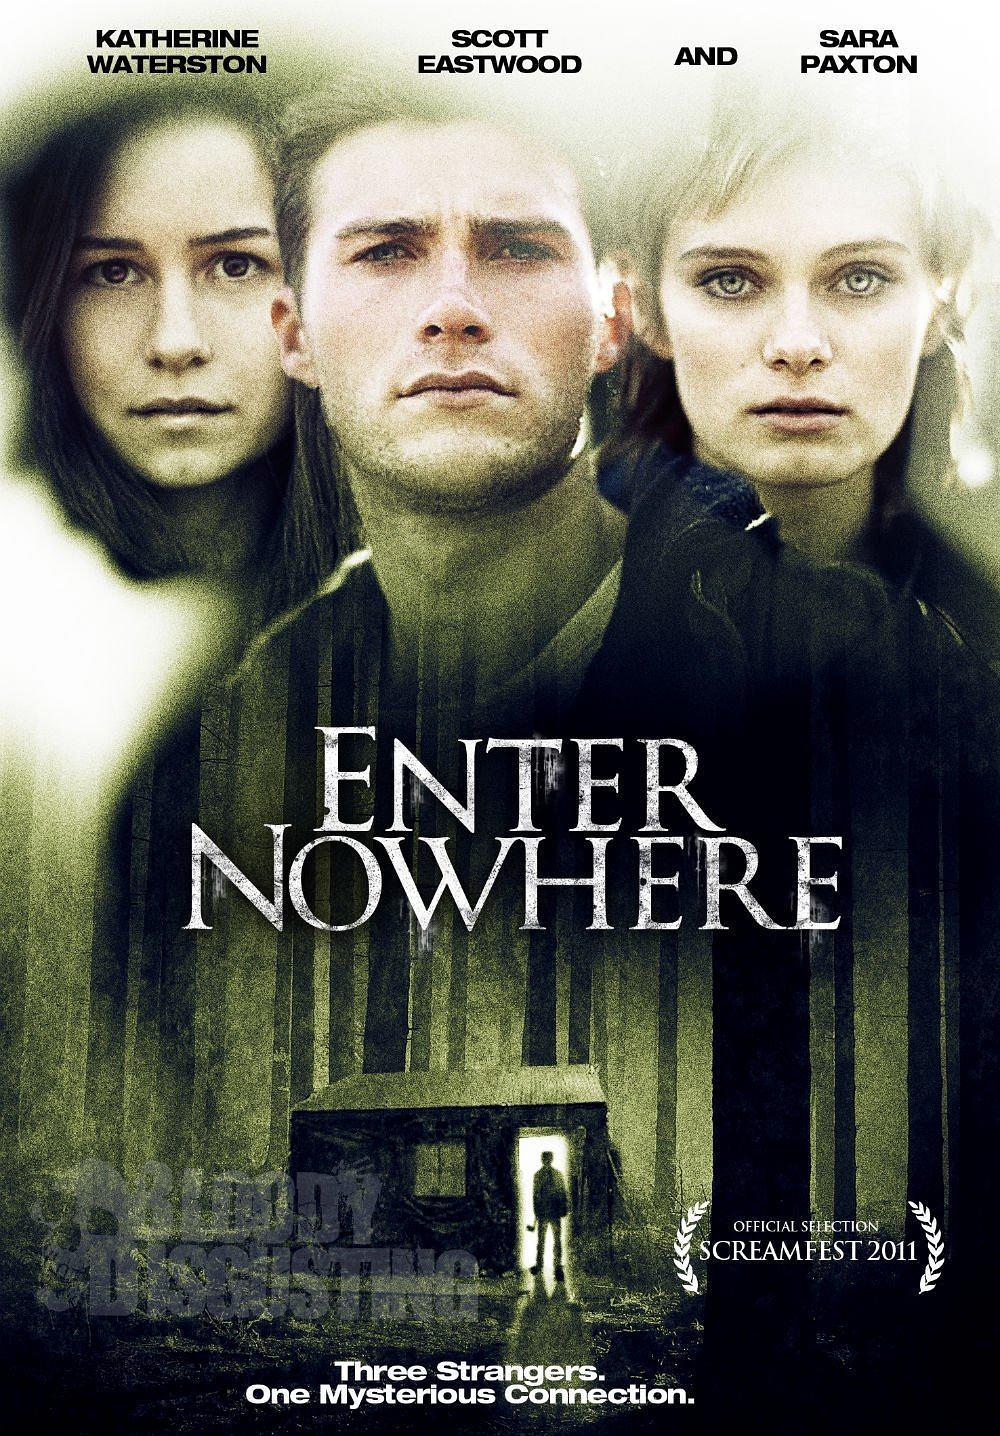 ENTER NOWHERE (2011)